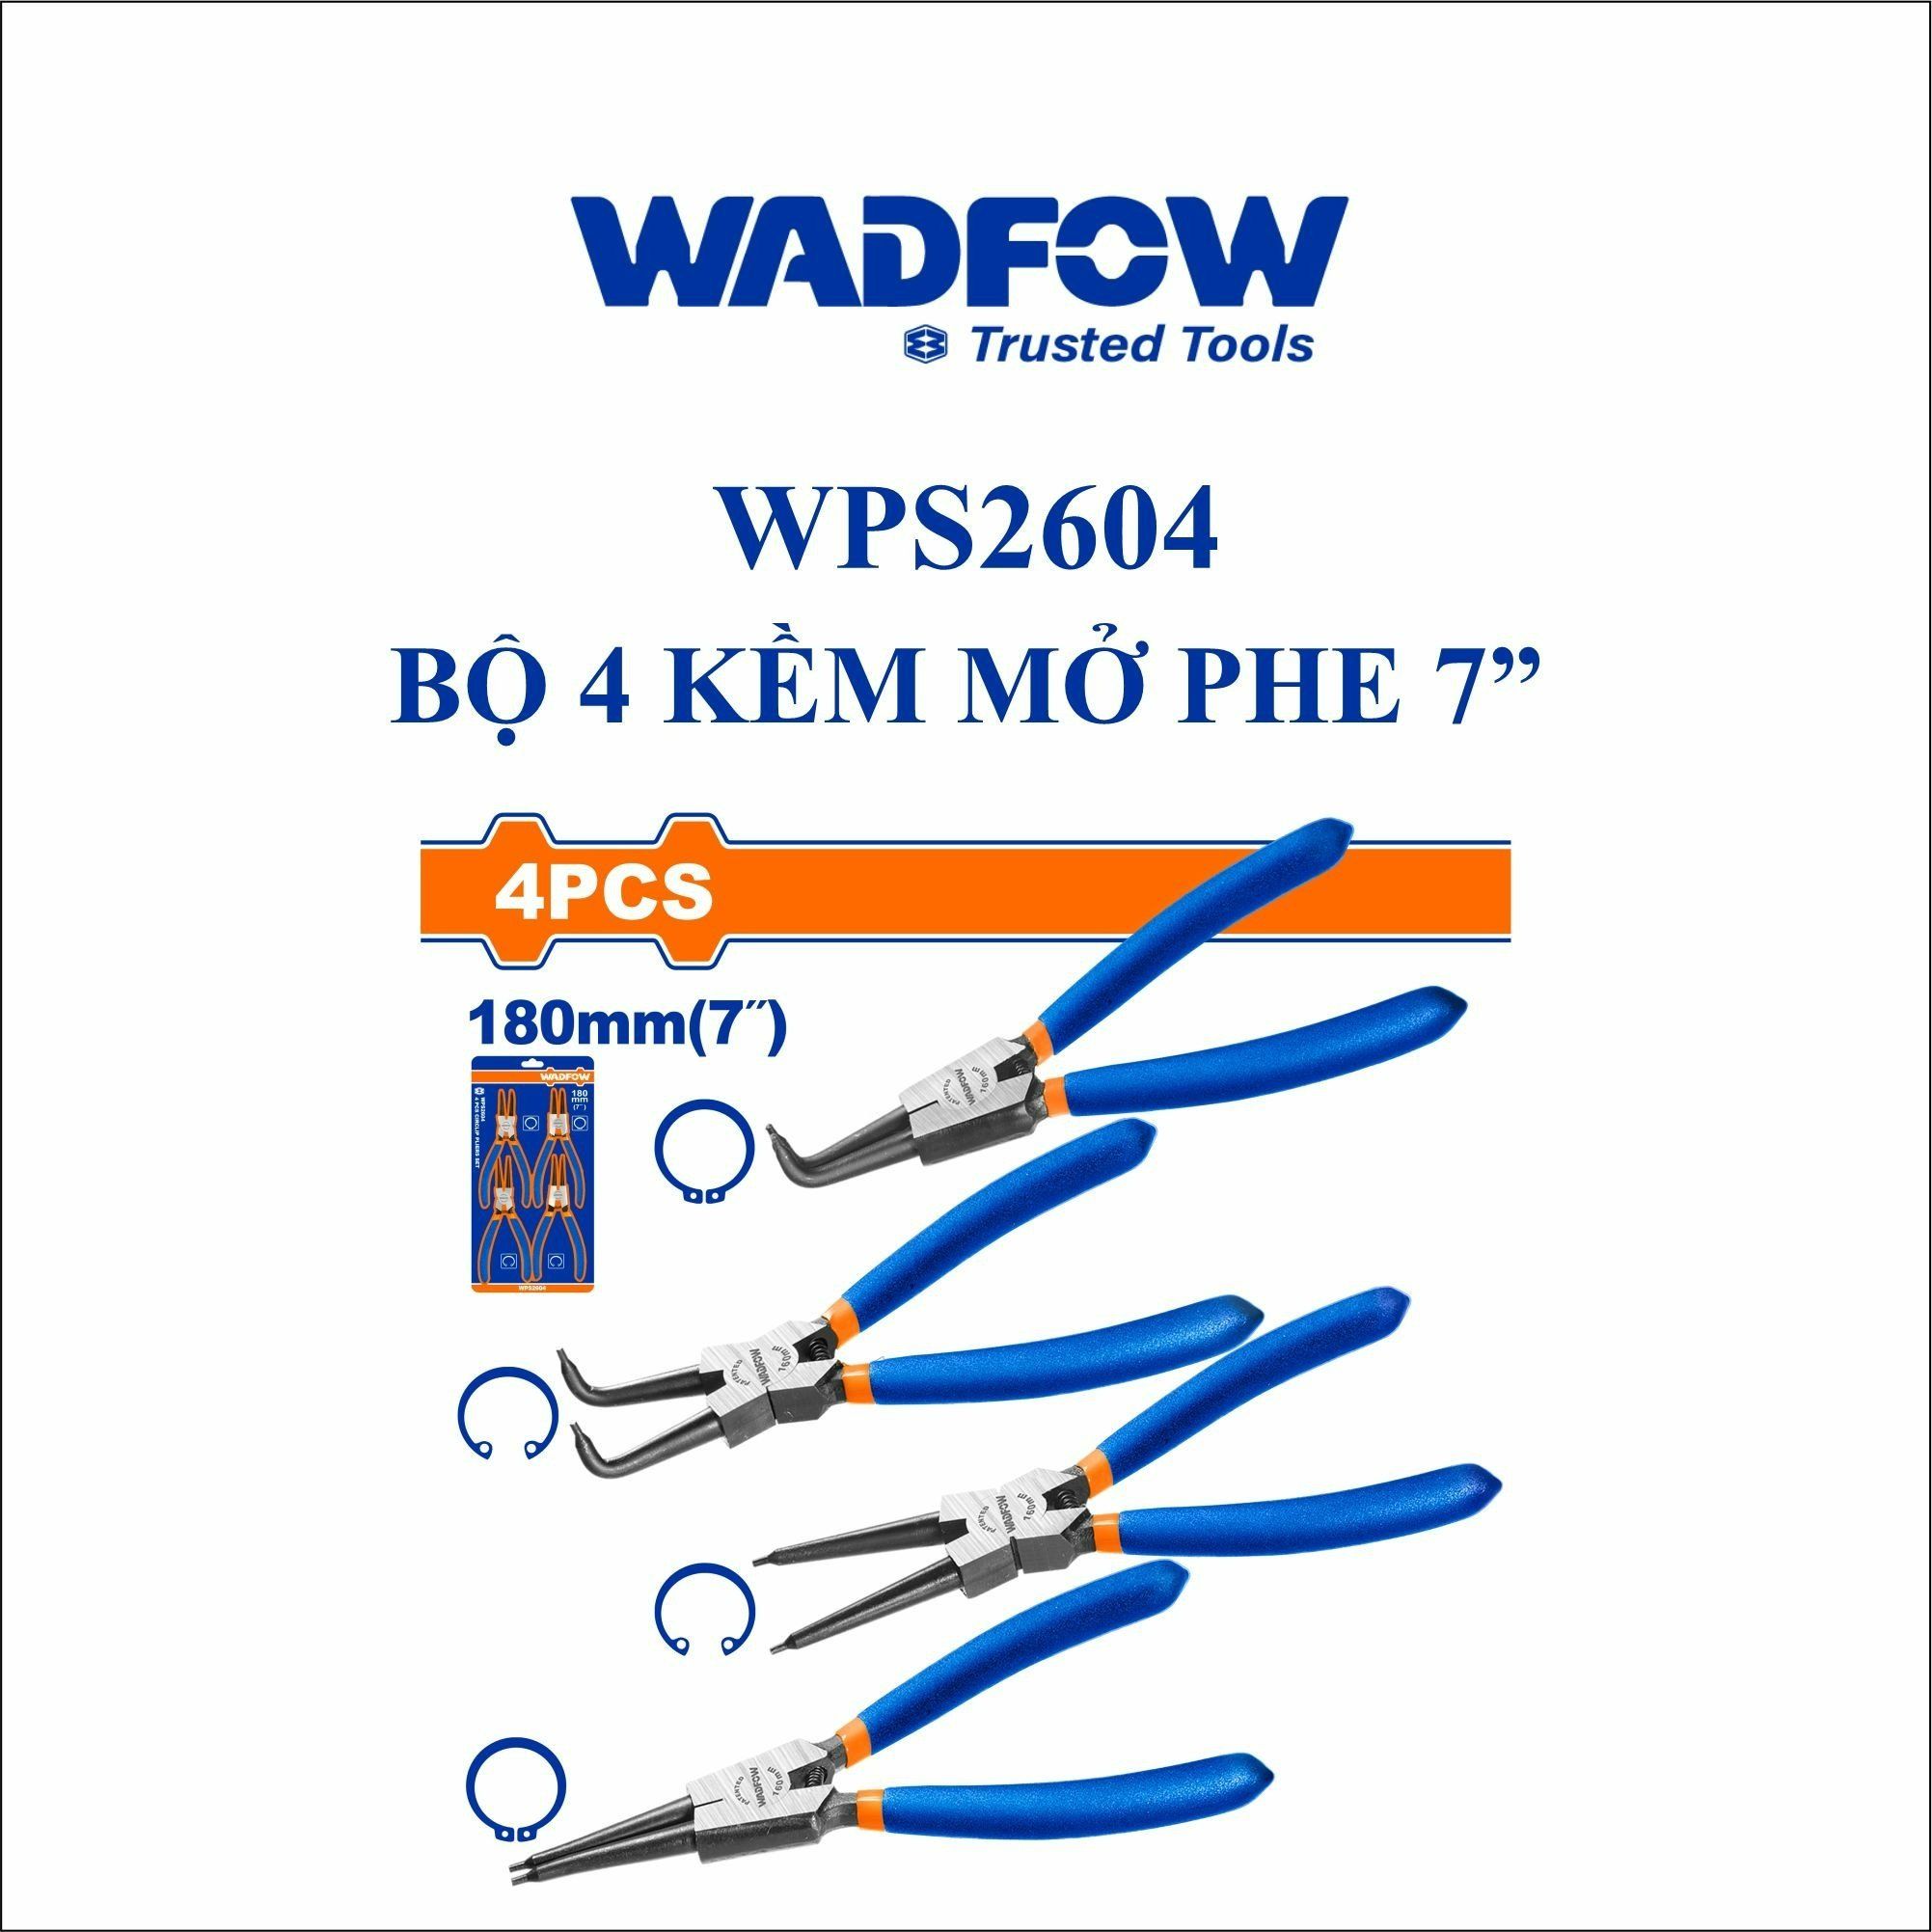  Bộ 4 Kìm mở phe 7 Inch WADFOW WPS2604 